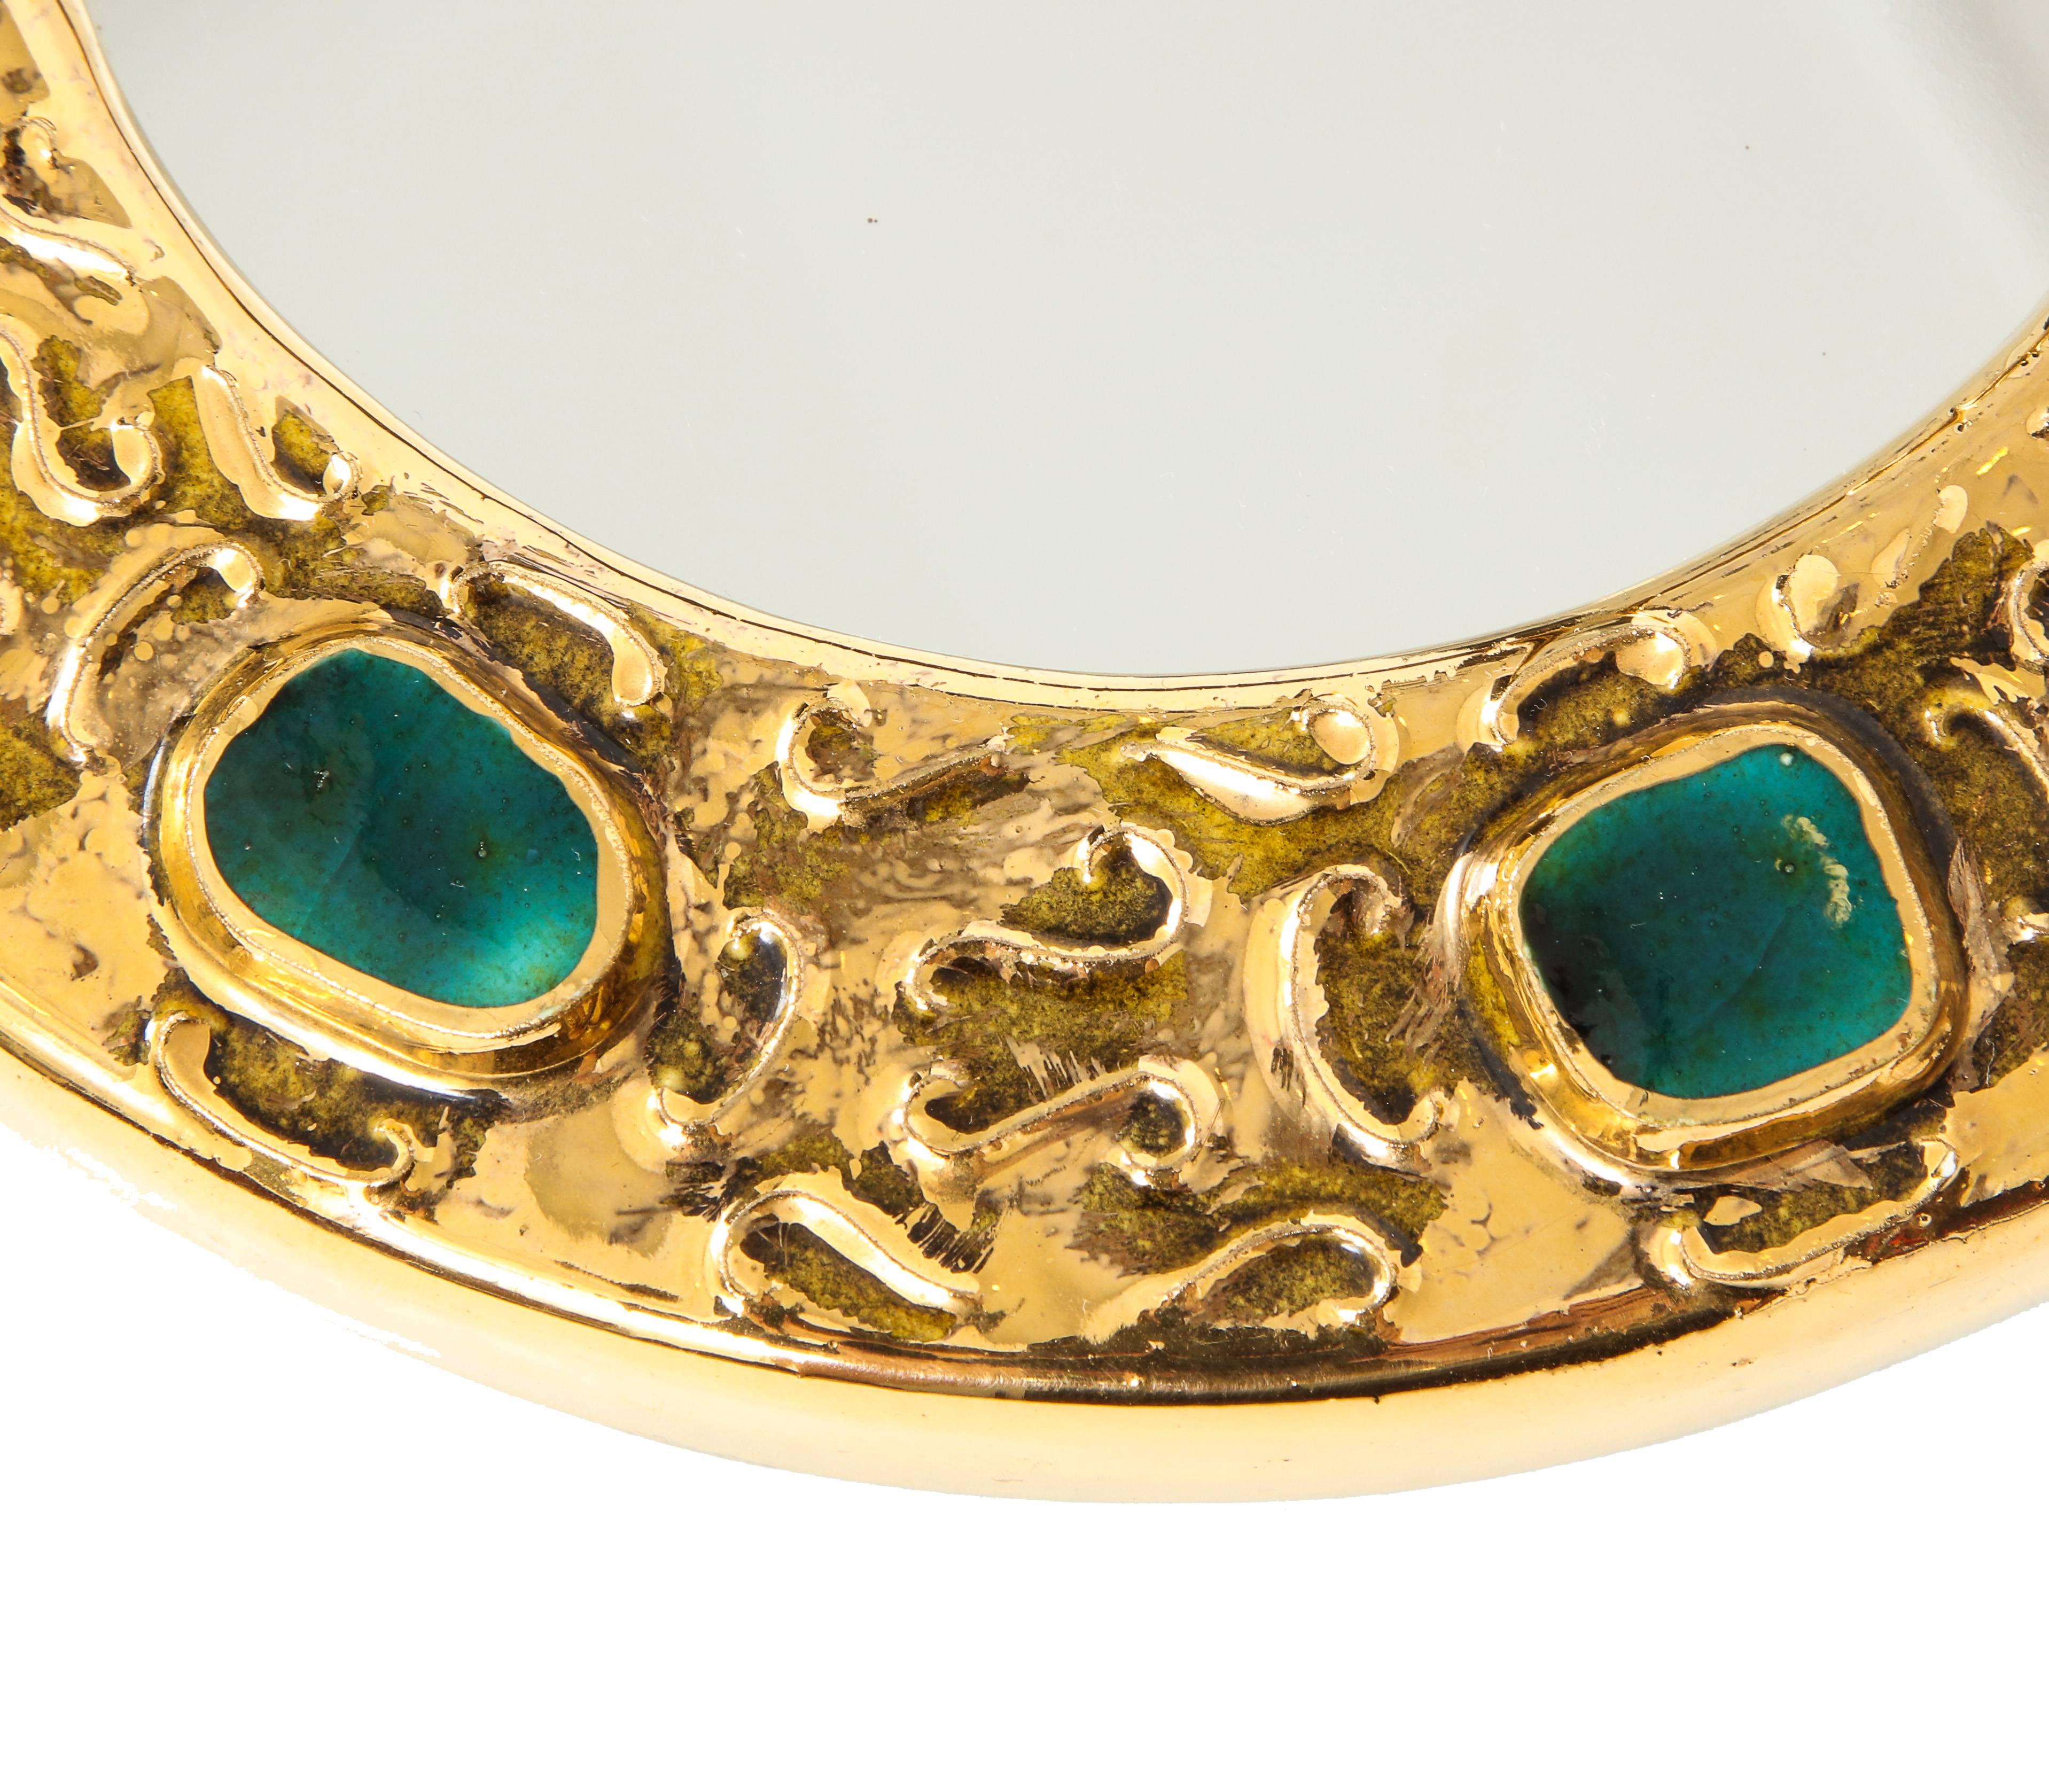 Glazed Francois Lembo Mirror, Ceramic, Gold, Green, Jeweled, Signed